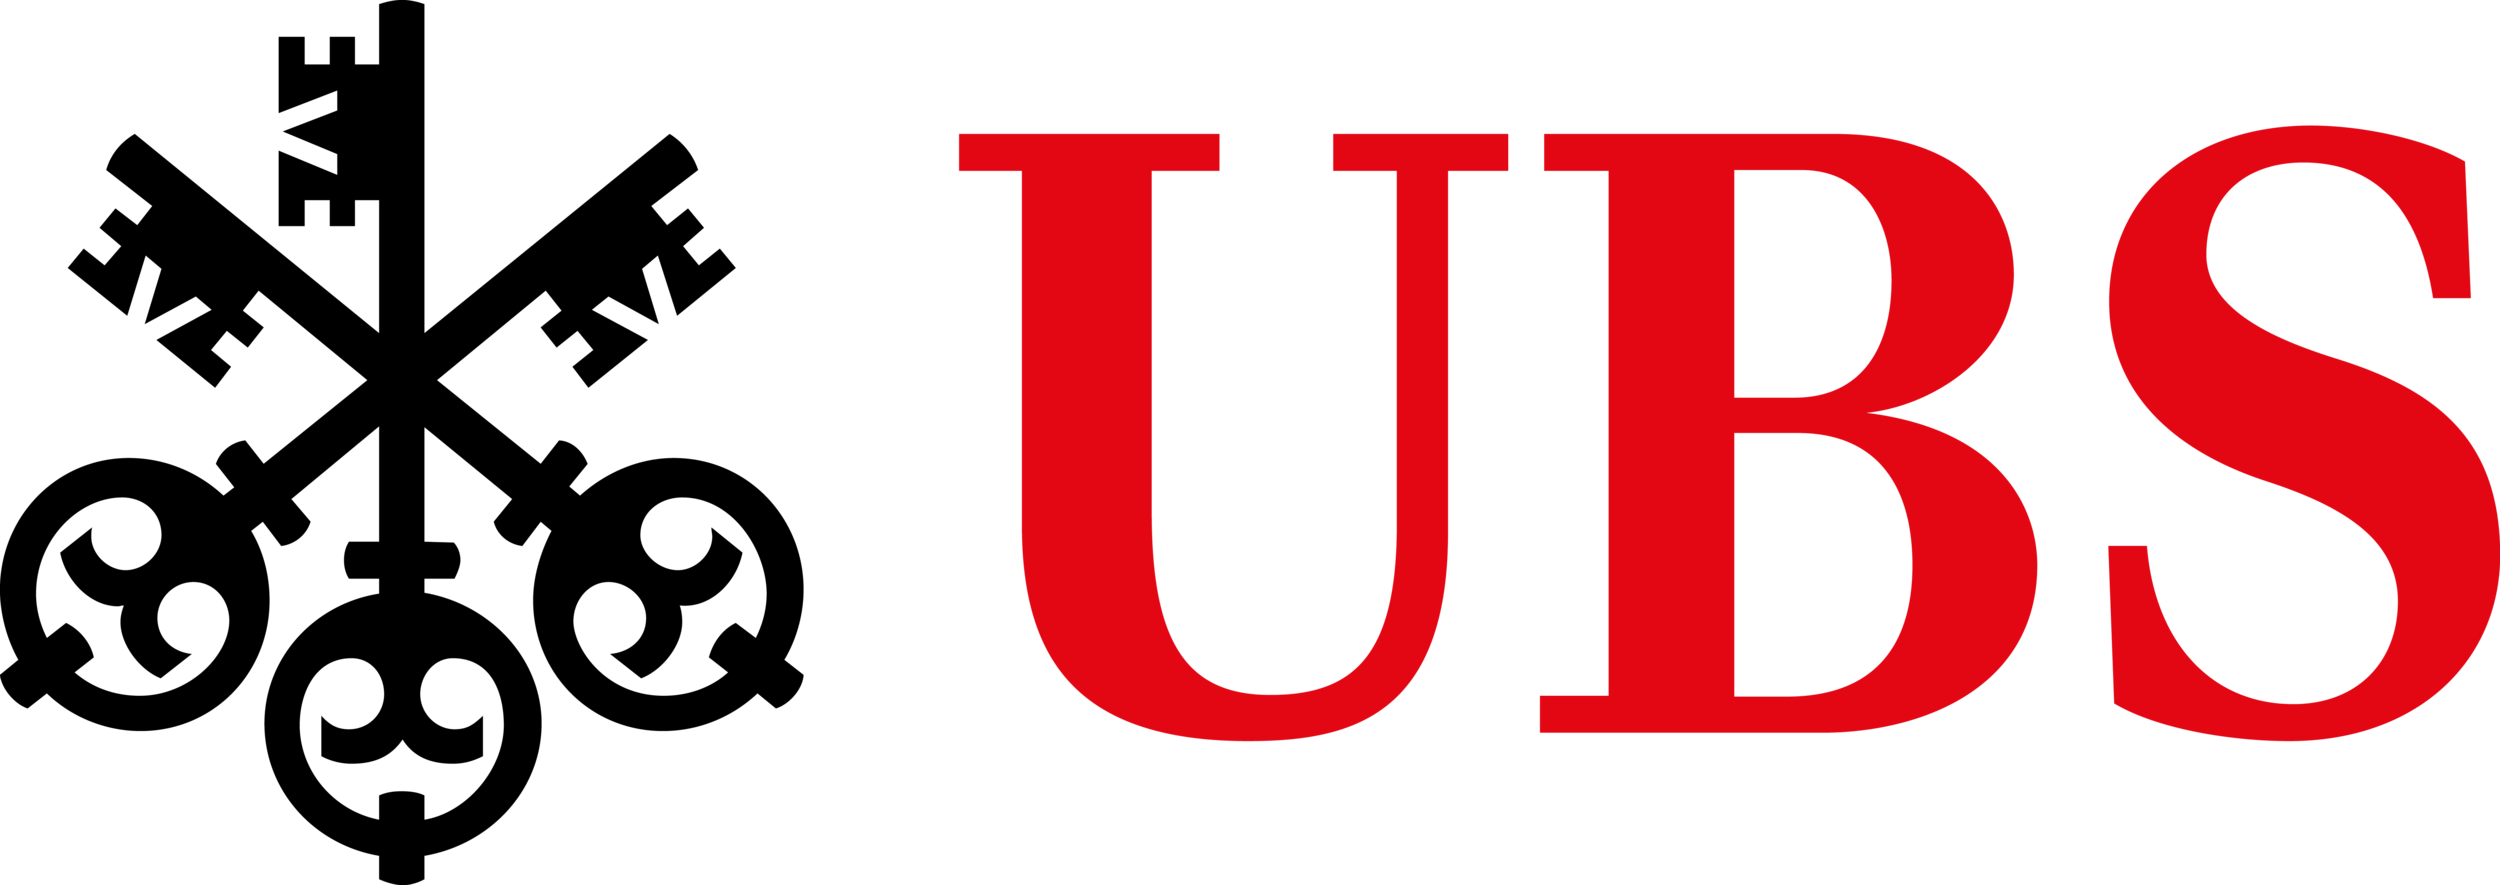 ubs-logo-dla-kbr.png